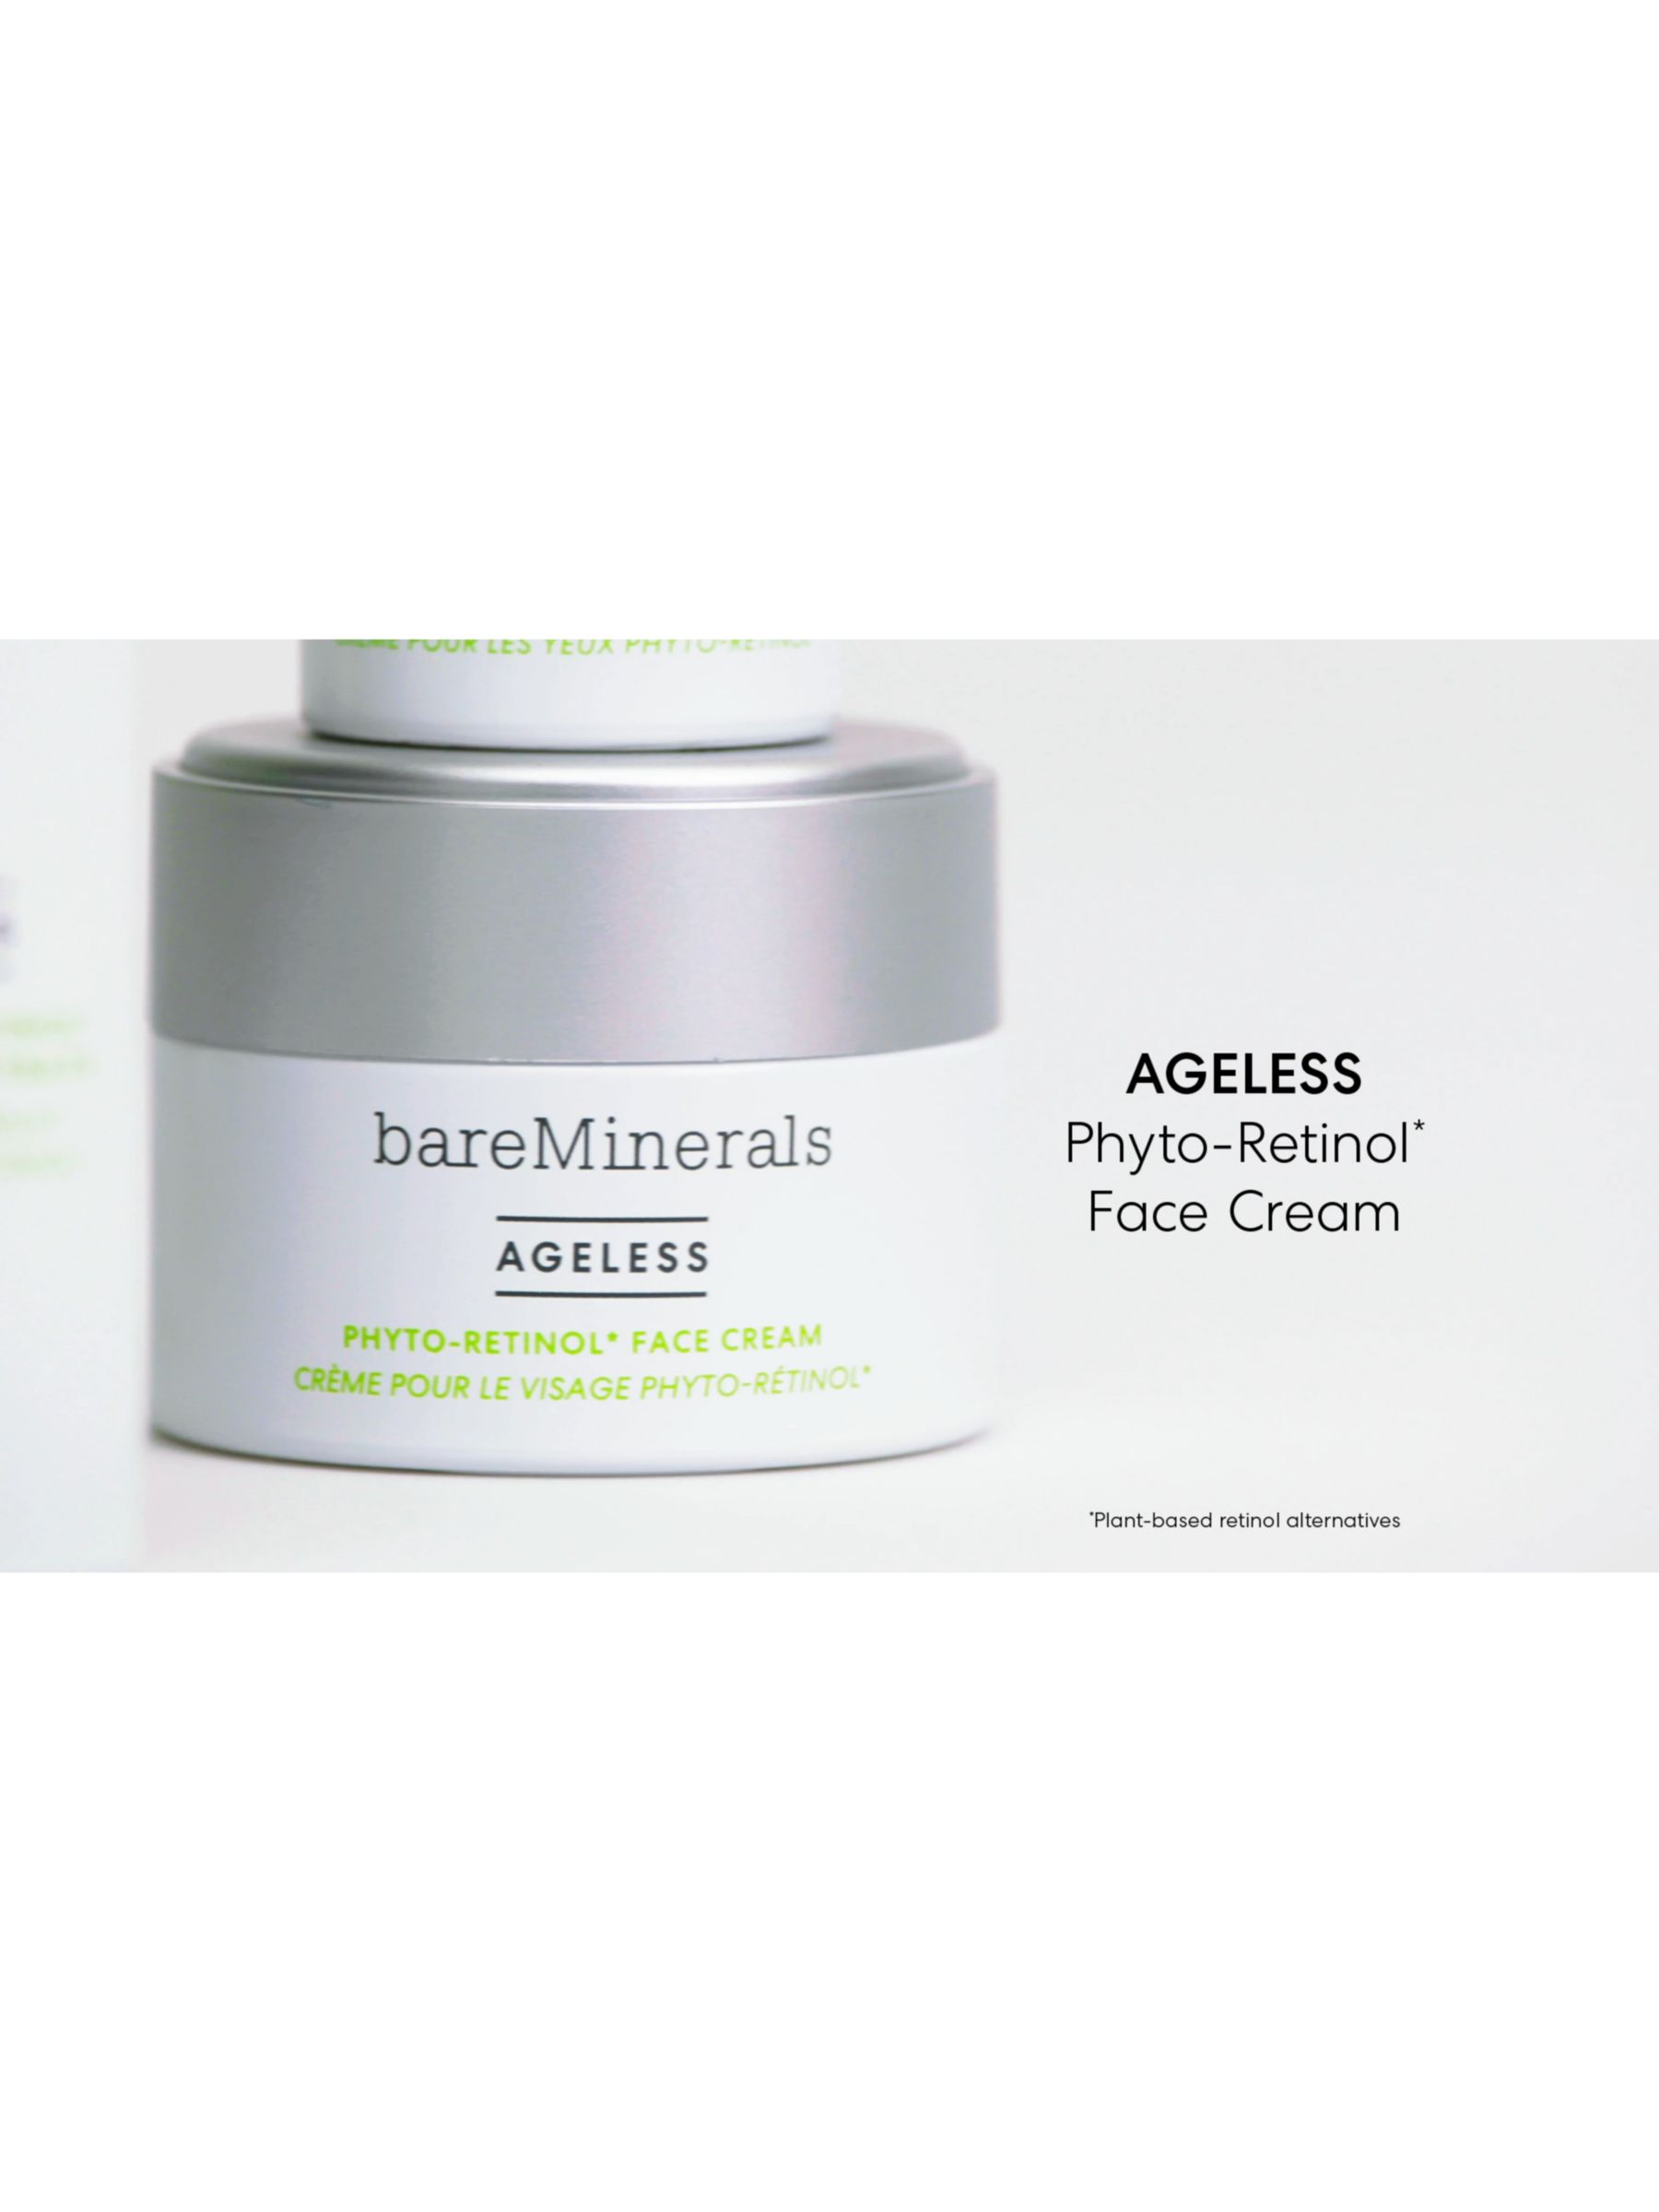 bareMinerals AGELESS Phyto-Retinol Face Cream, 50ml 5